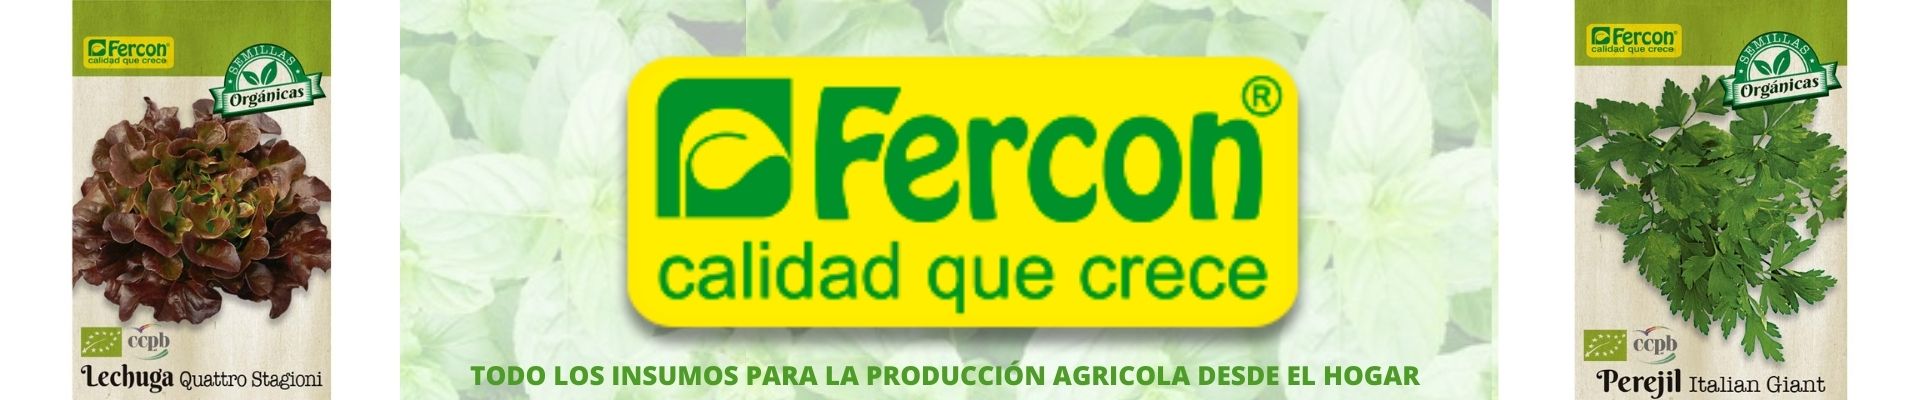 Fercon agroshow banner